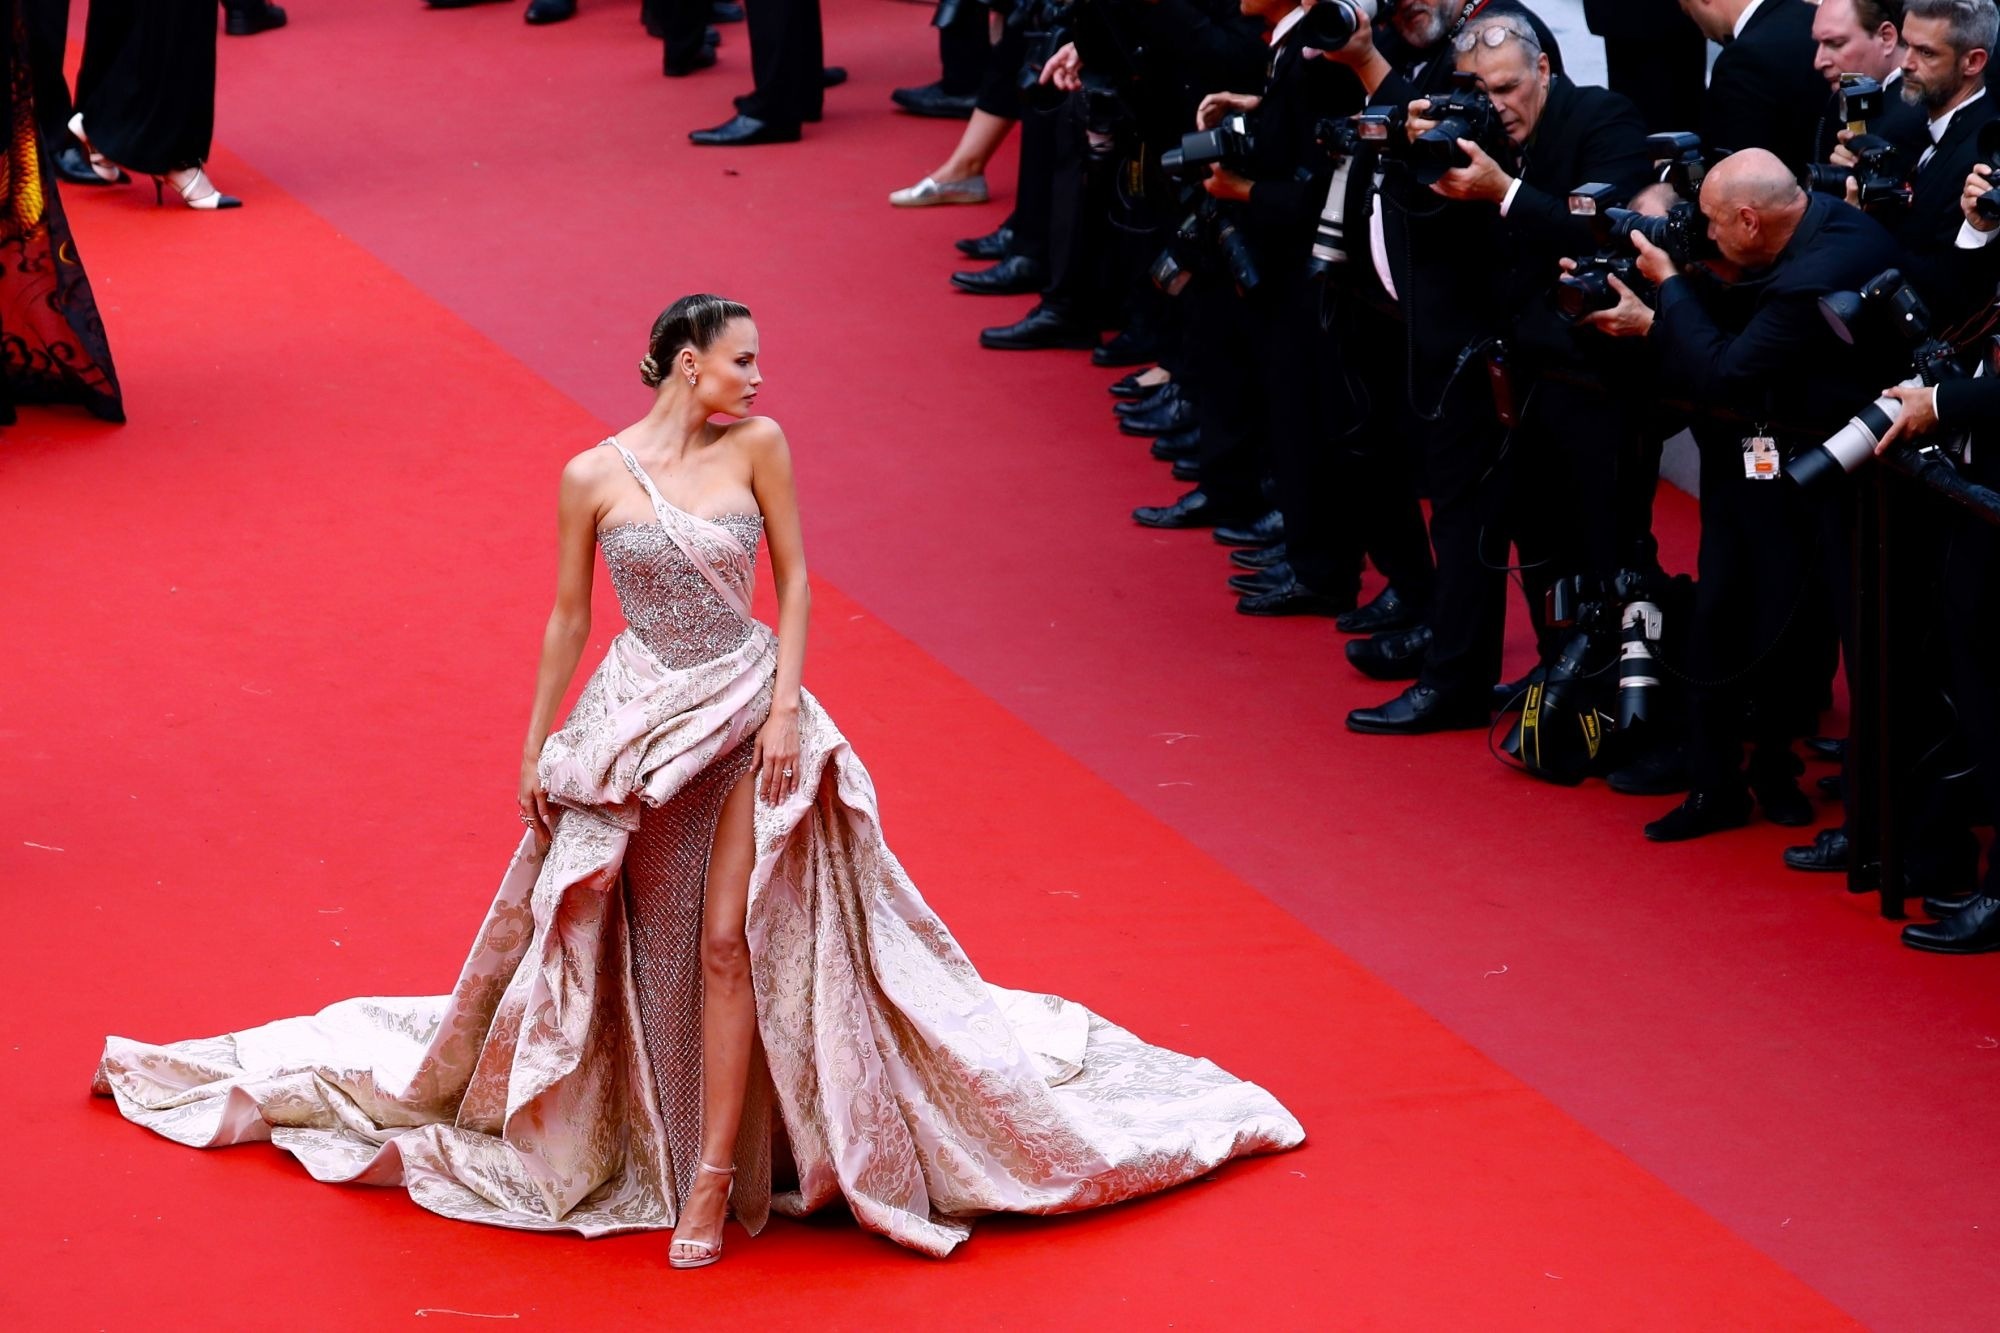 Một động tác thừa trên thảm đỏ ở Cannes đã đủ khiến vị khách bị nhắc nhở